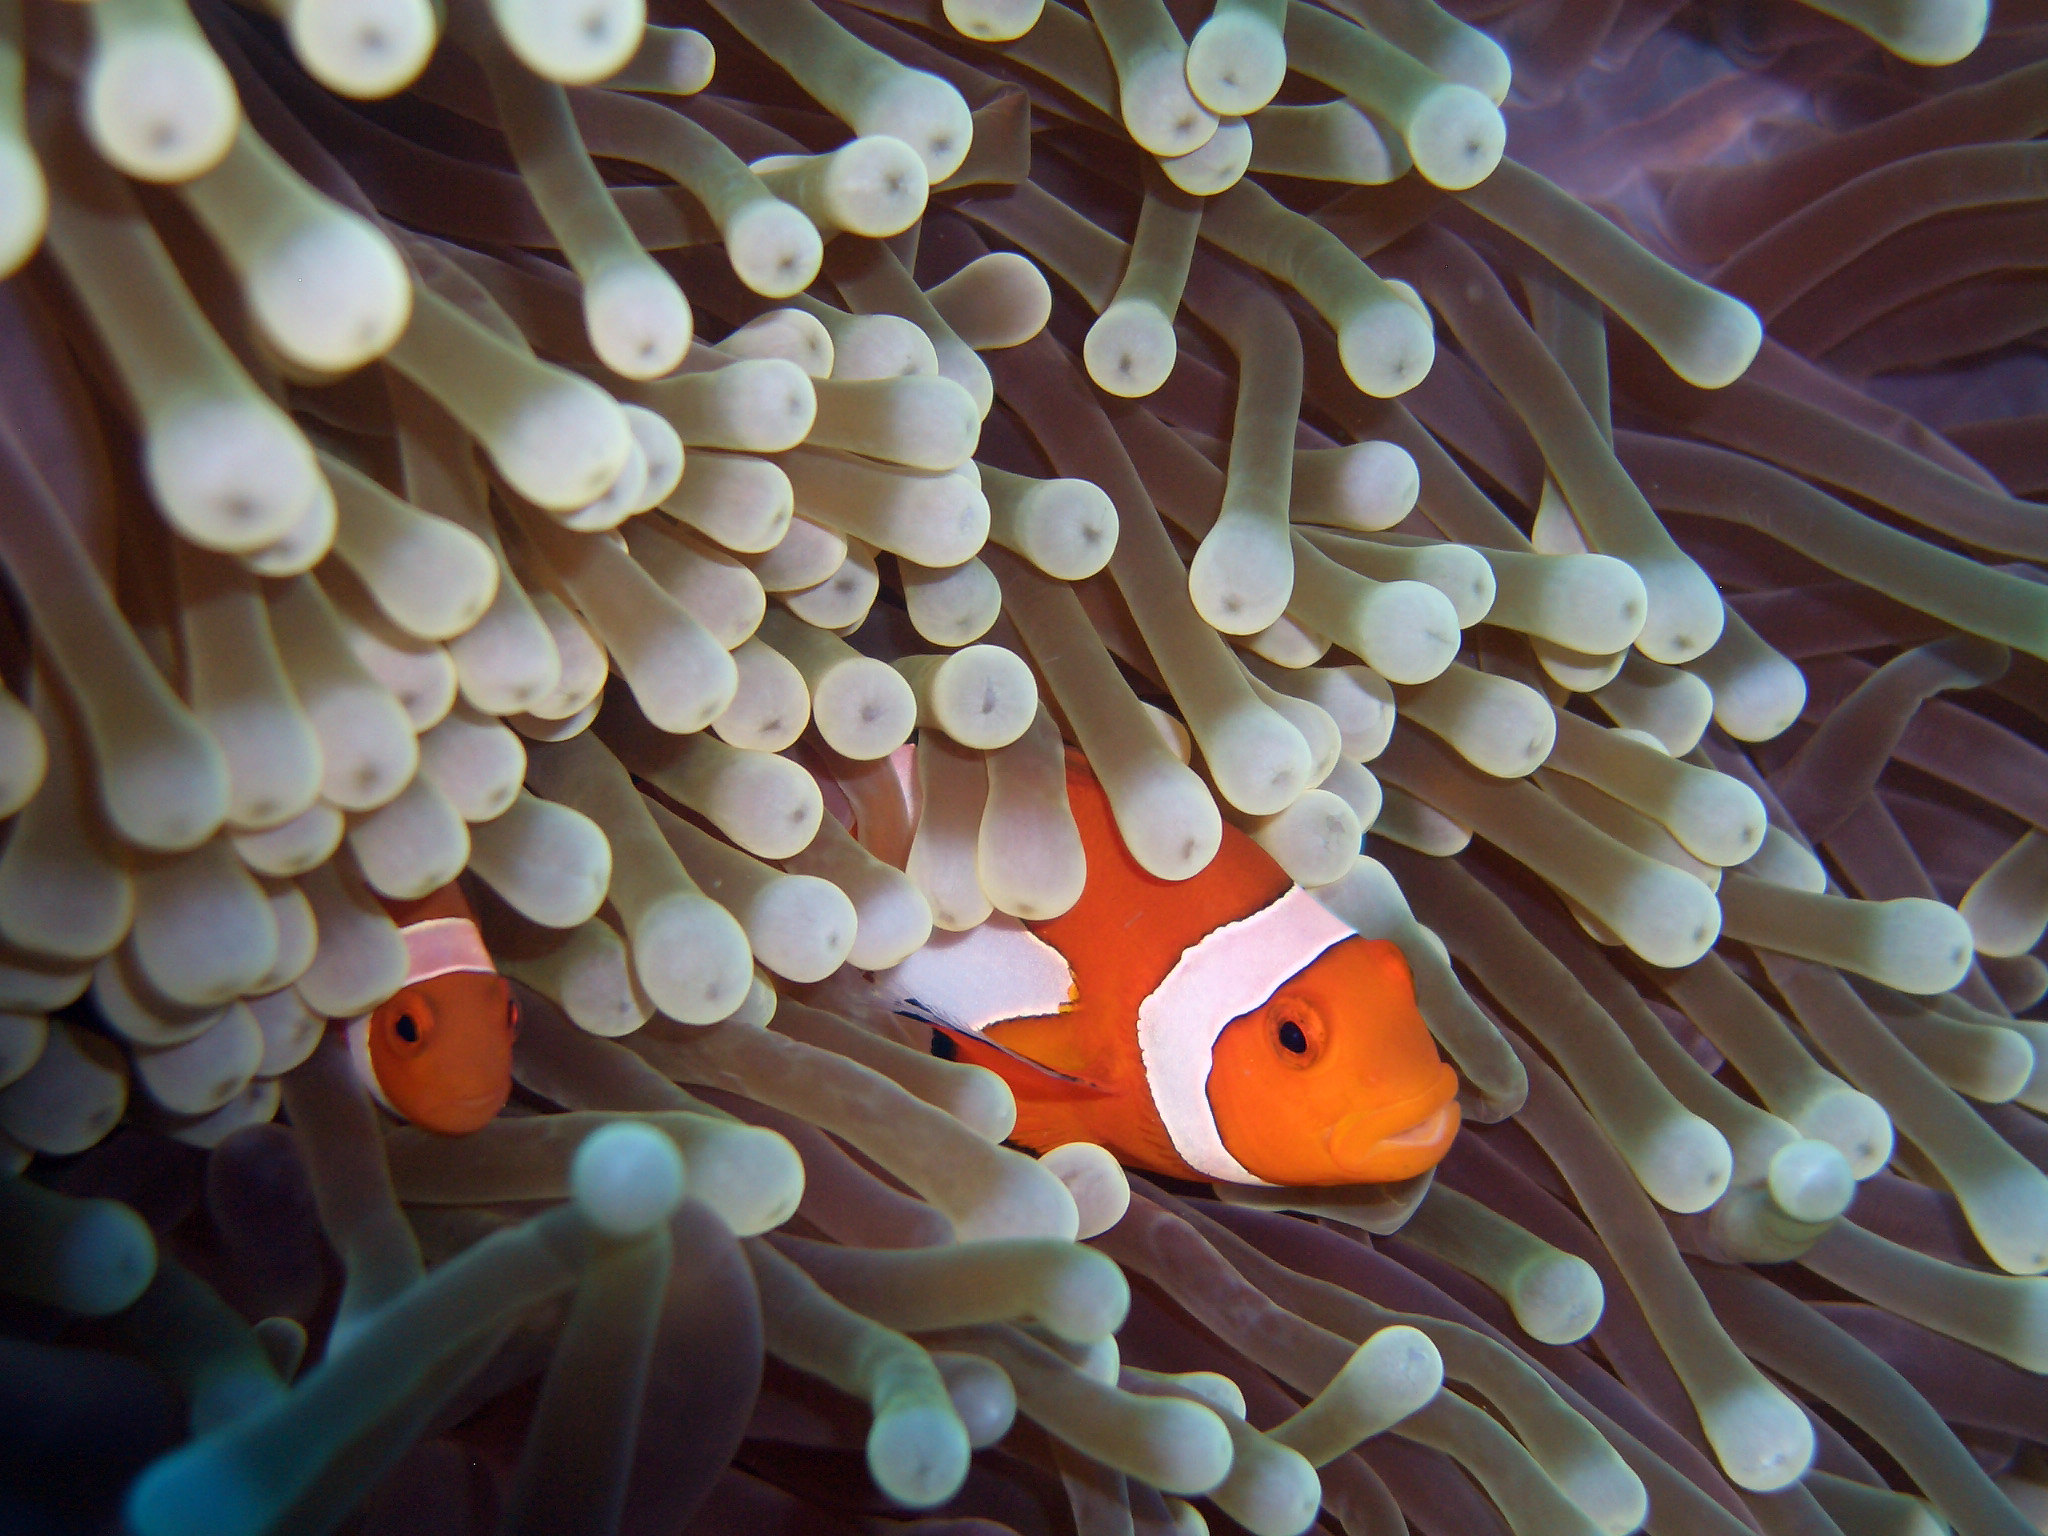 Un gran pez payaso rayado anaranjado y blanco y uno más pequeño rodeado de anenomas blancos alargados de mar.